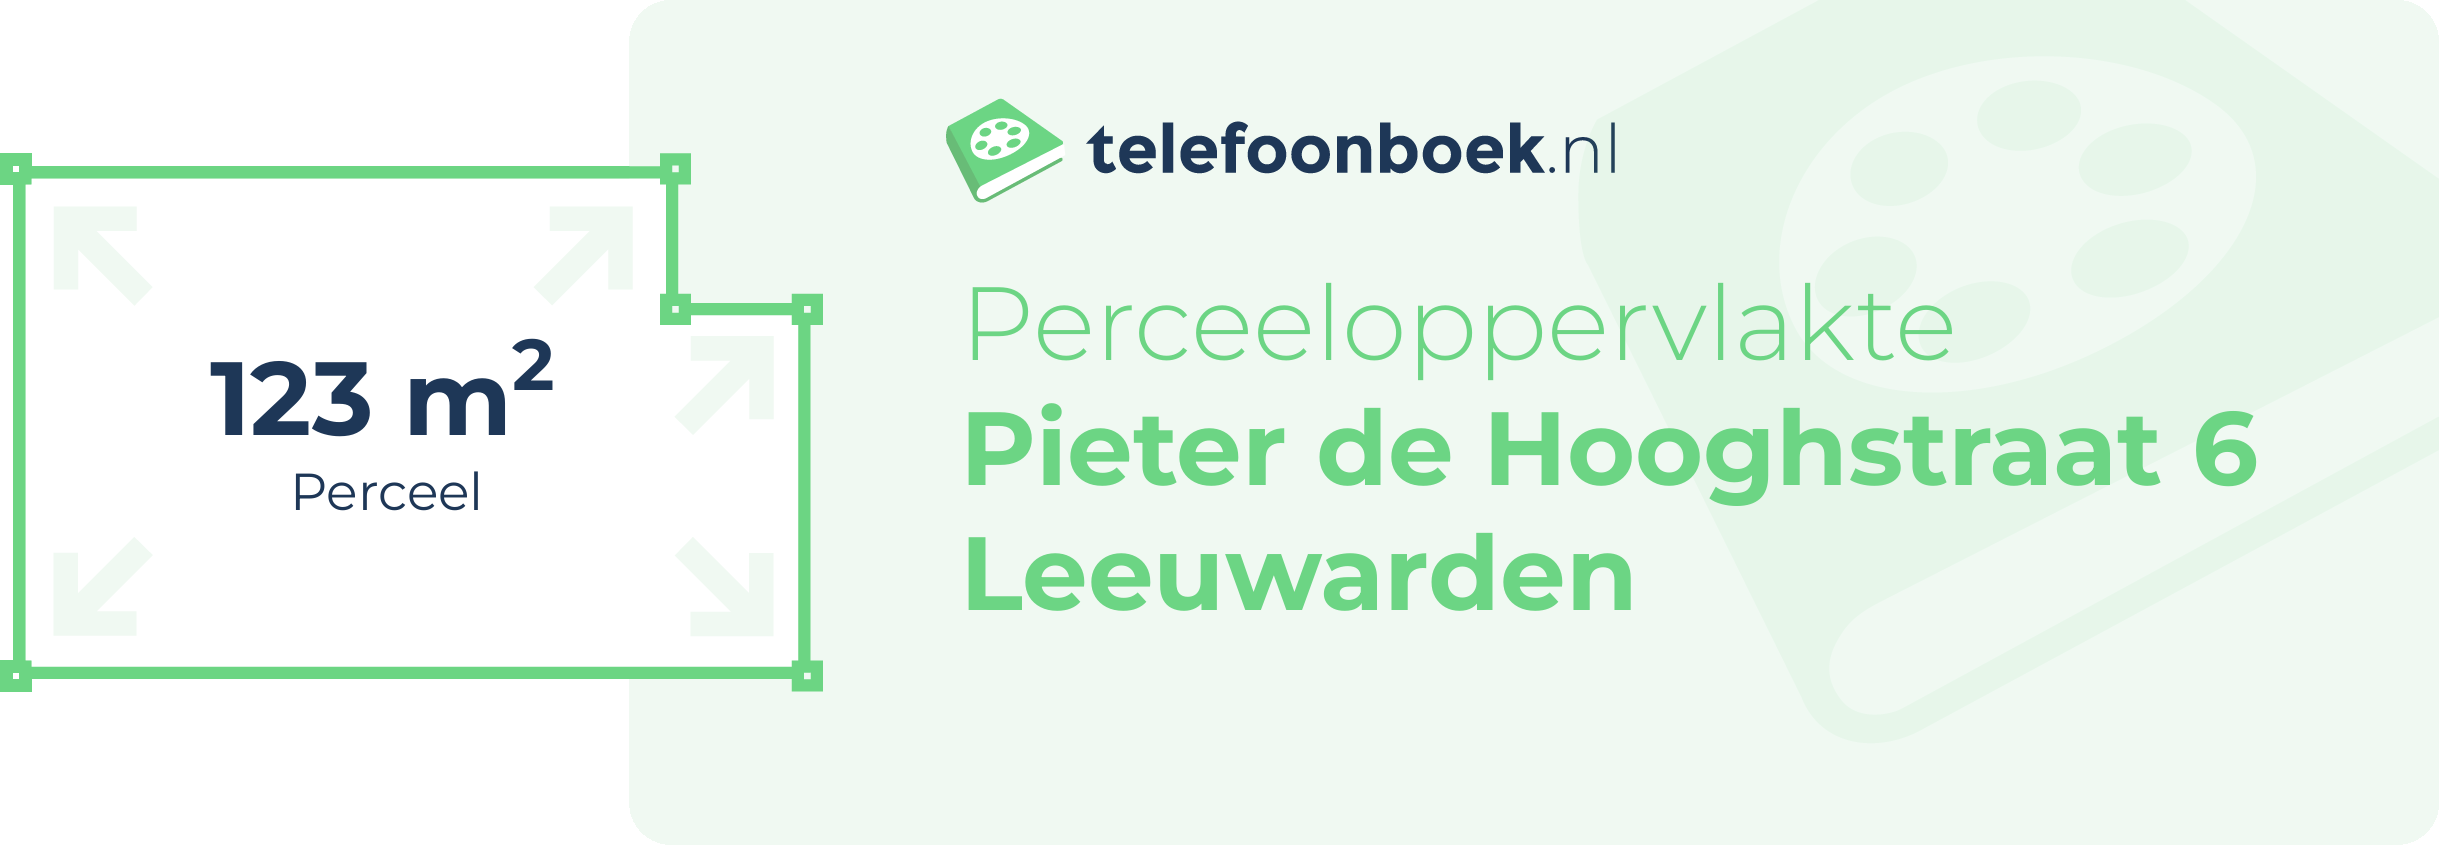 Perceeloppervlakte Pieter De Hooghstraat 6 Leeuwarden